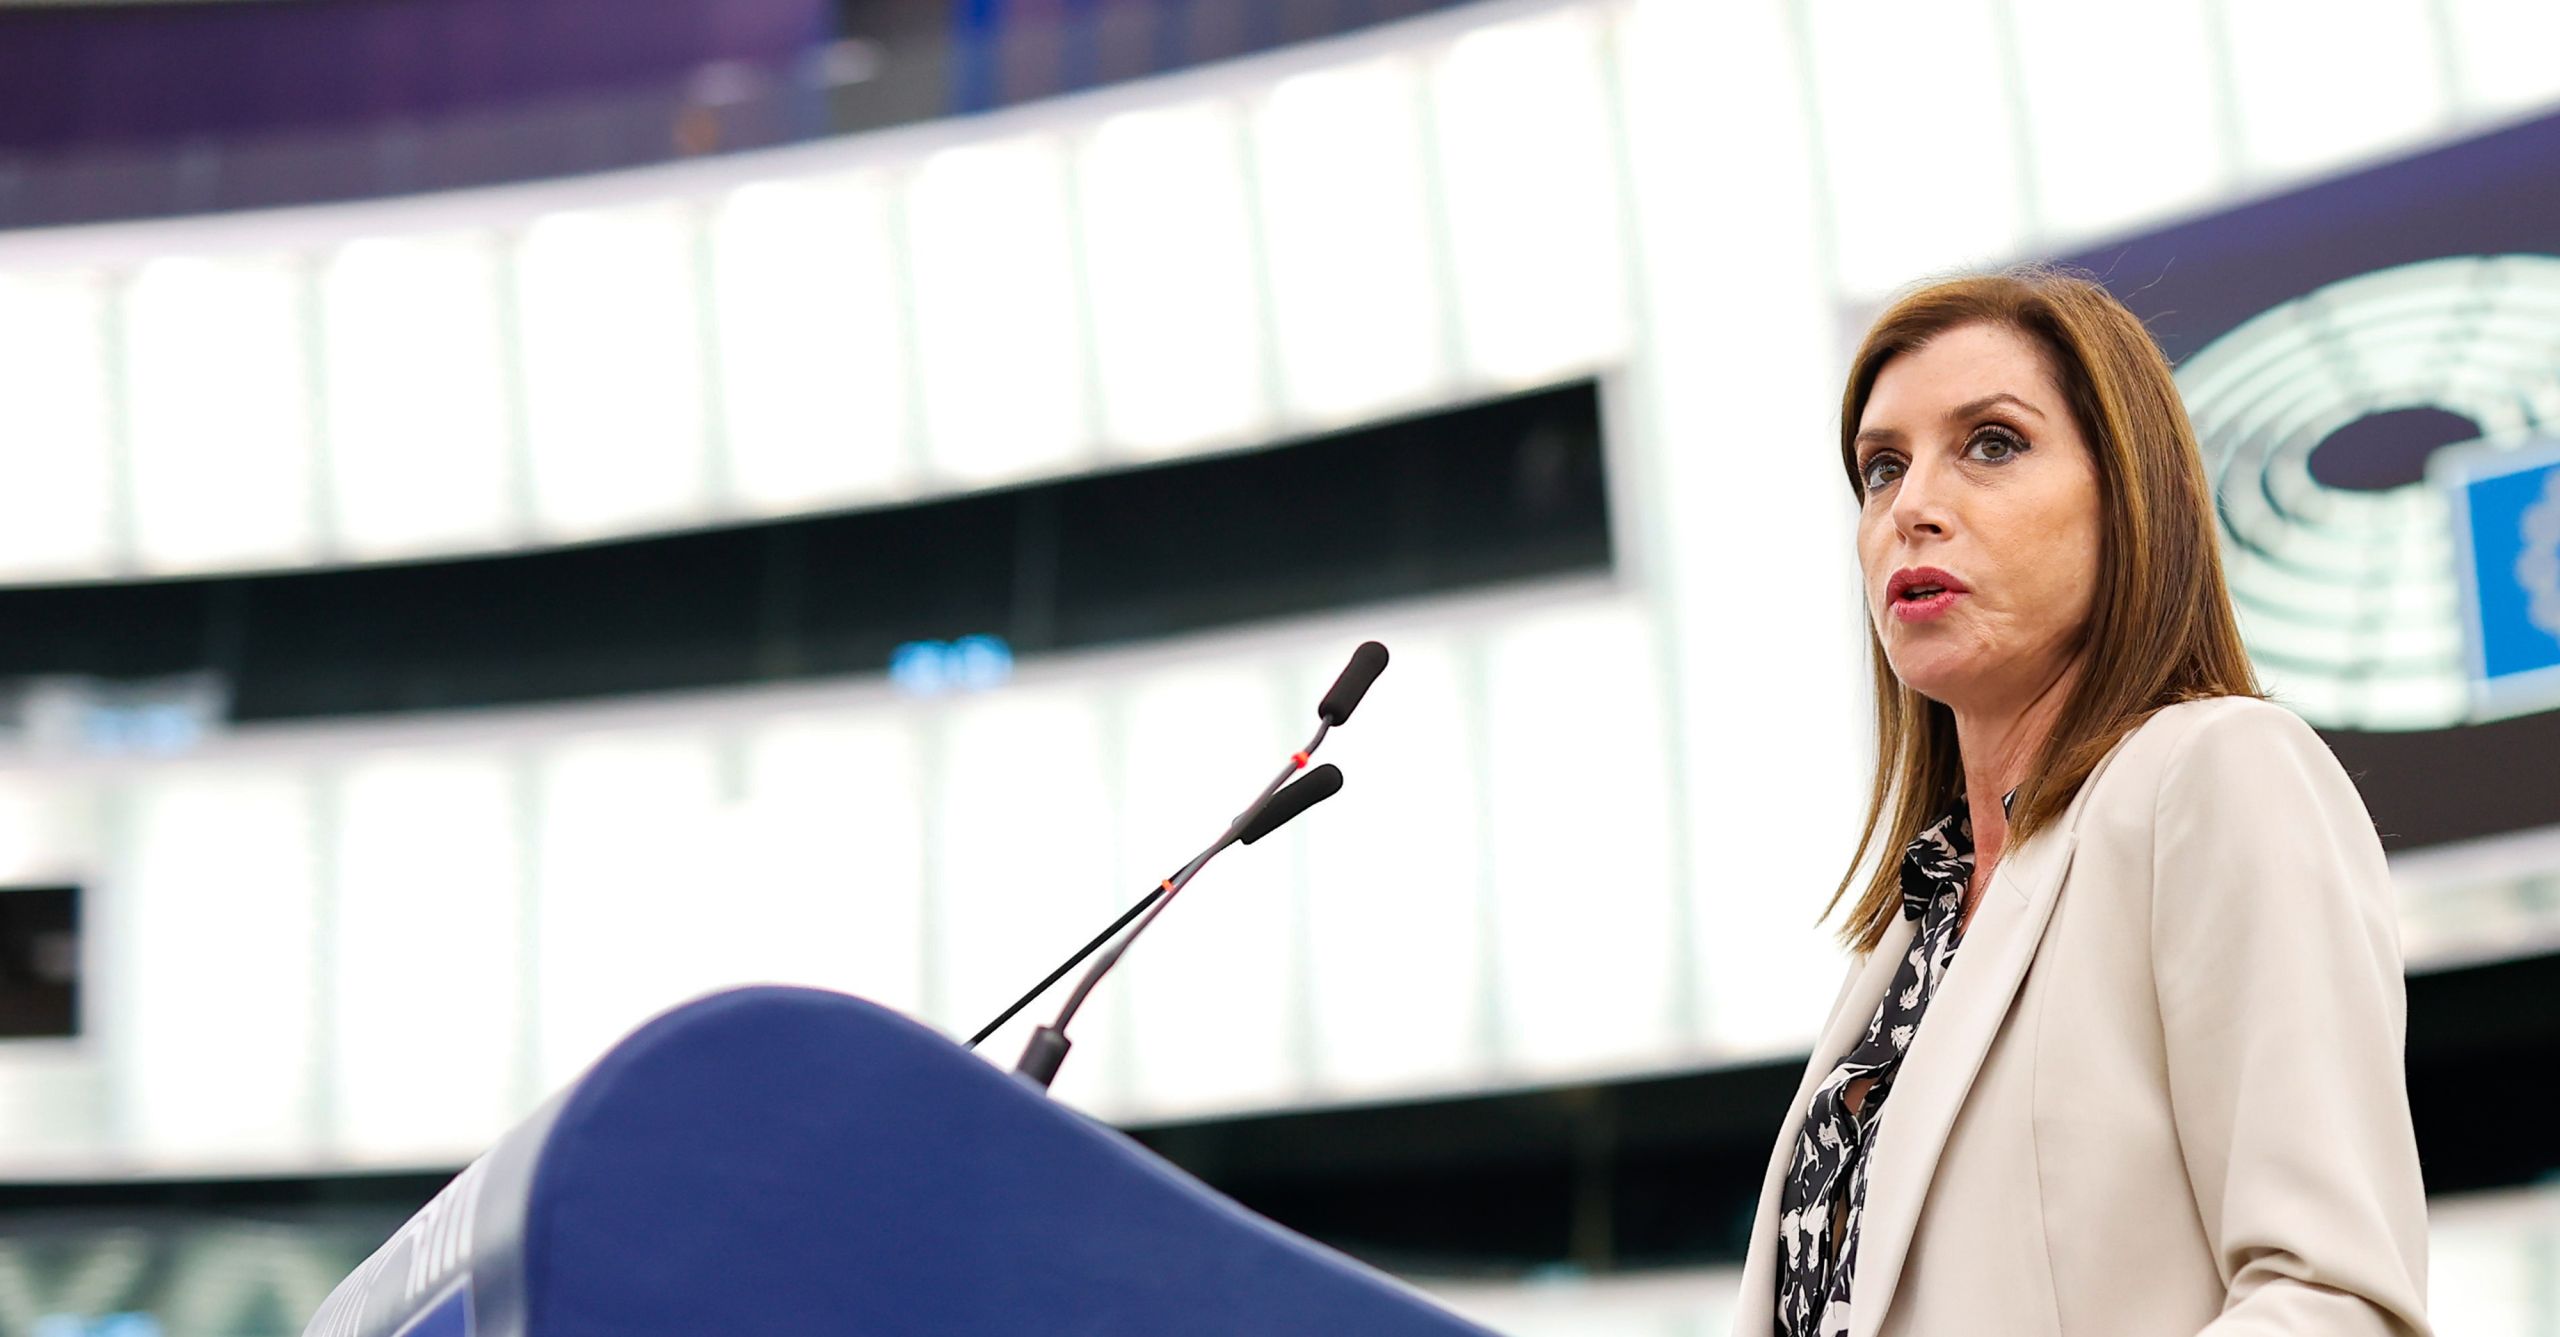 Άννα Μισέλ Ασημακοπούλου “επεισόδιο”: Συγχαρητήρια από το ΕΛΚ για τη στάση της στο Ευρωκοινοβούλιο